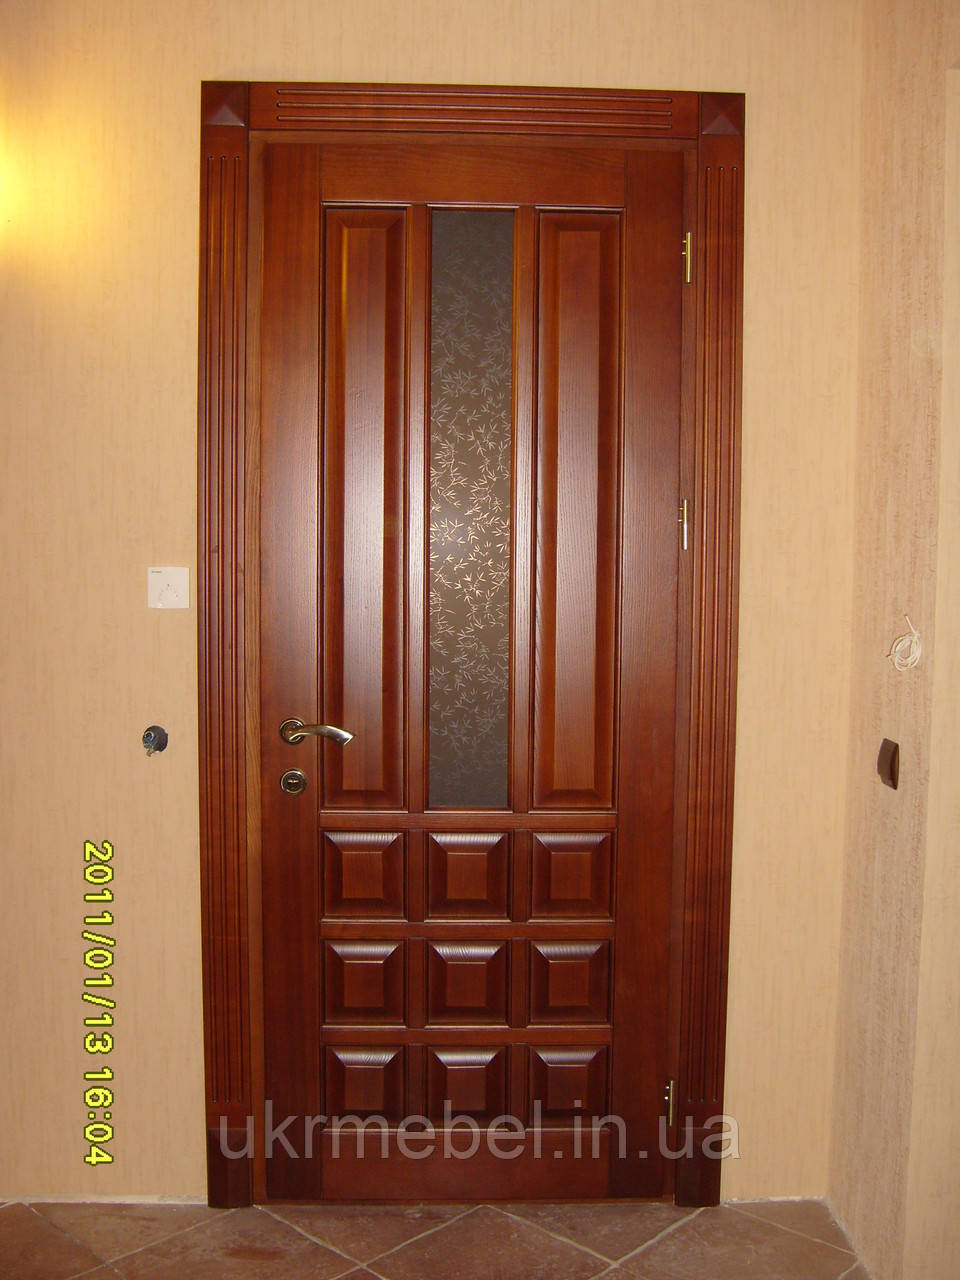 Изготовление деревянных дверей. Двери из дерева под заказ. Деревянные 